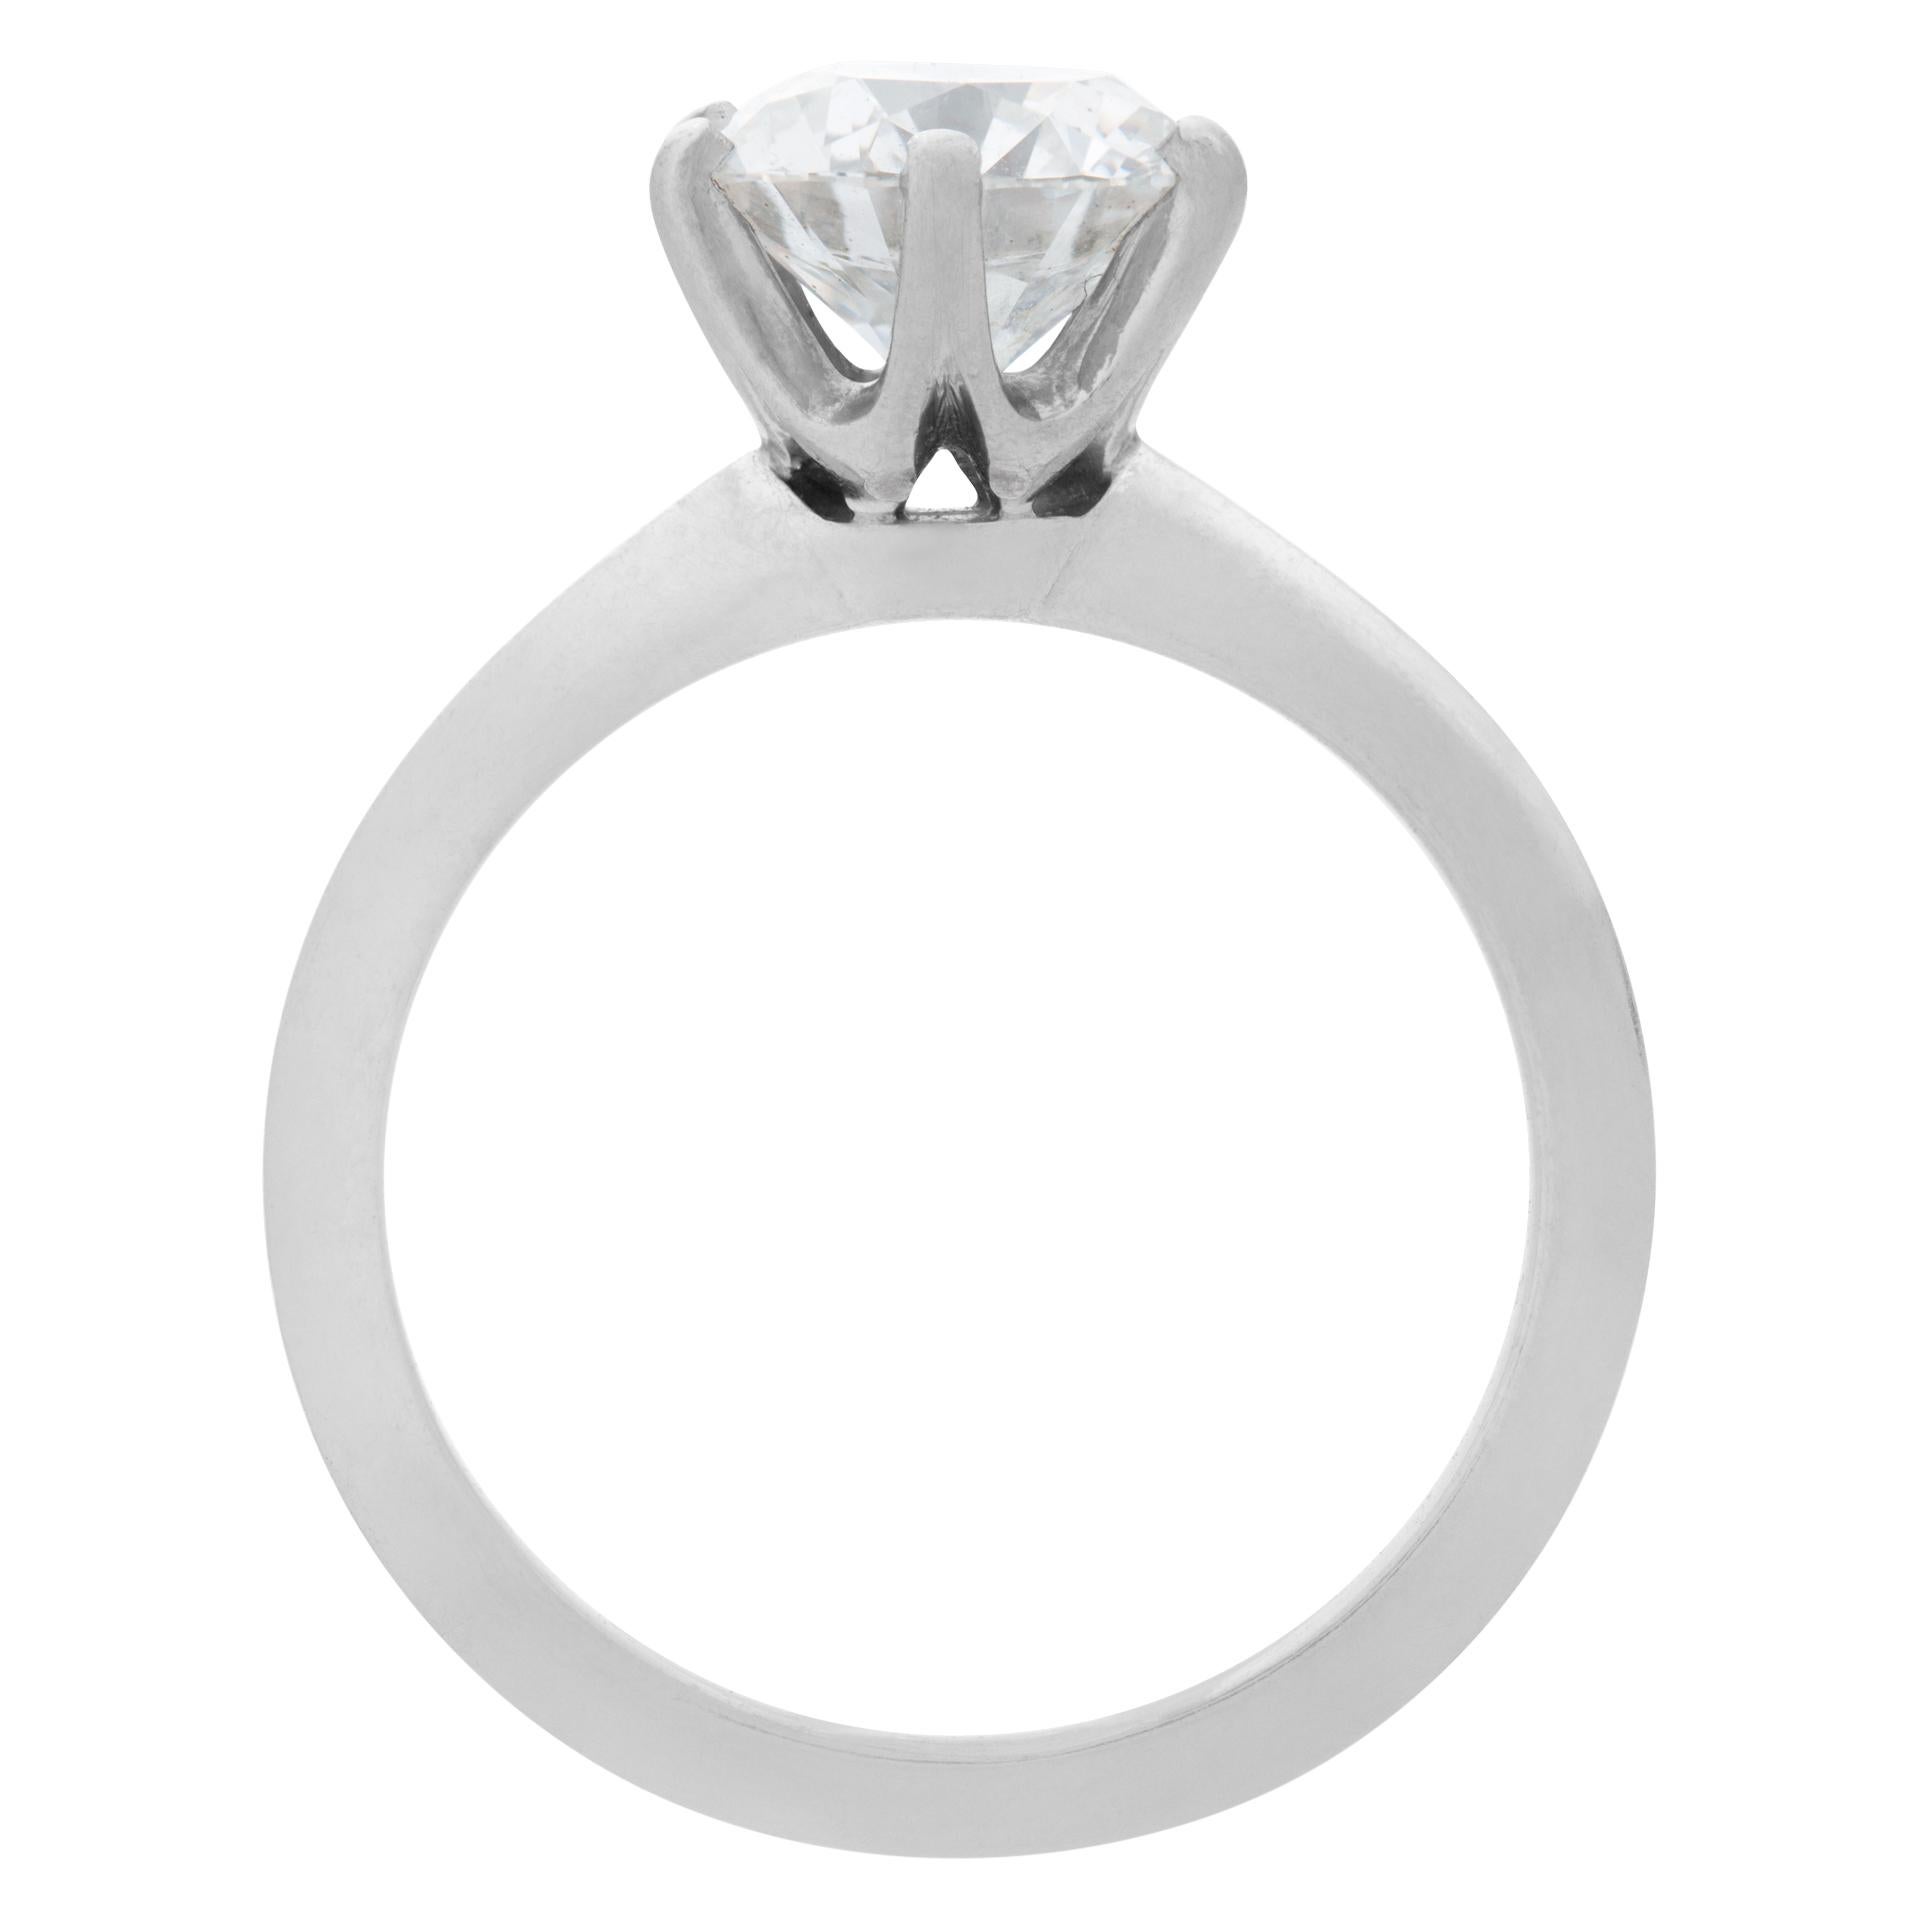 Brilliant Cut Tiffany & Co. Round Brilliant Diamond 1.53 Carat 'E Color, VVS2 Clarity' Ring For Sale